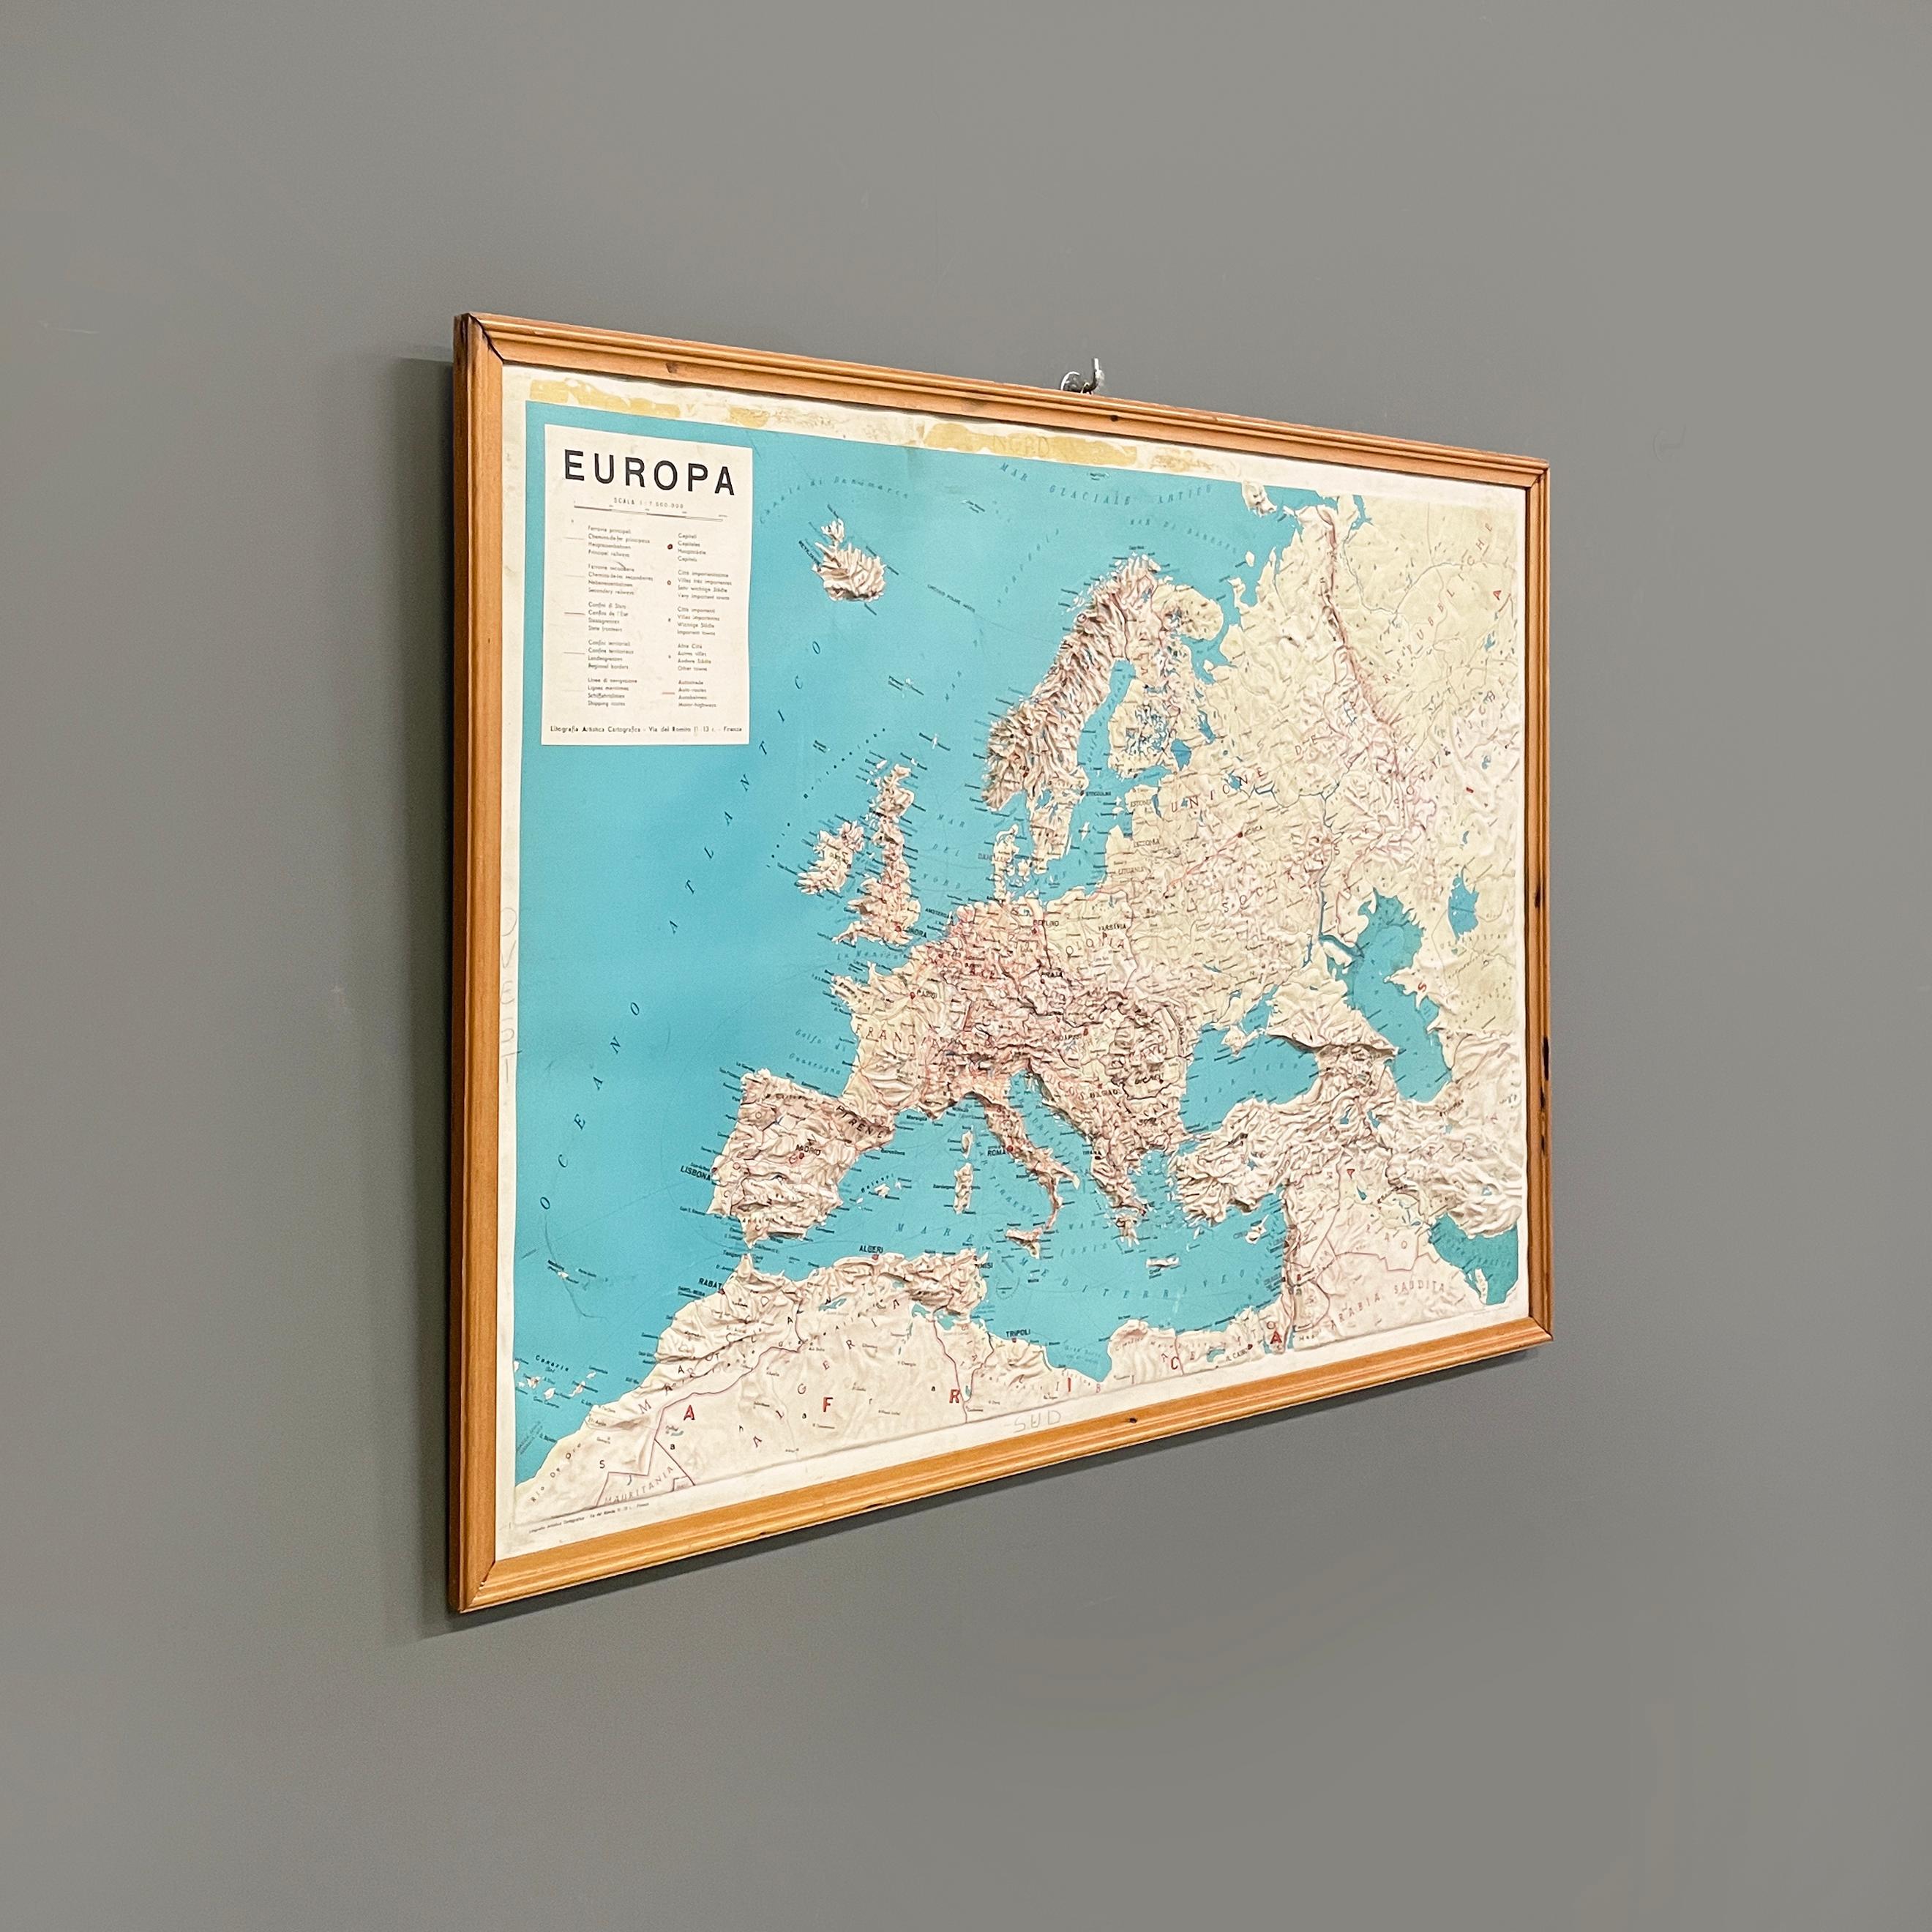 Carte géographique topographique italienne moderne de l'Europe dans un cadre en bois, années 1950-1990
Carte géographique de l'Europe en trois dimensions sur papier. La carte topographique présente les États avec leurs chaînes de montagnes